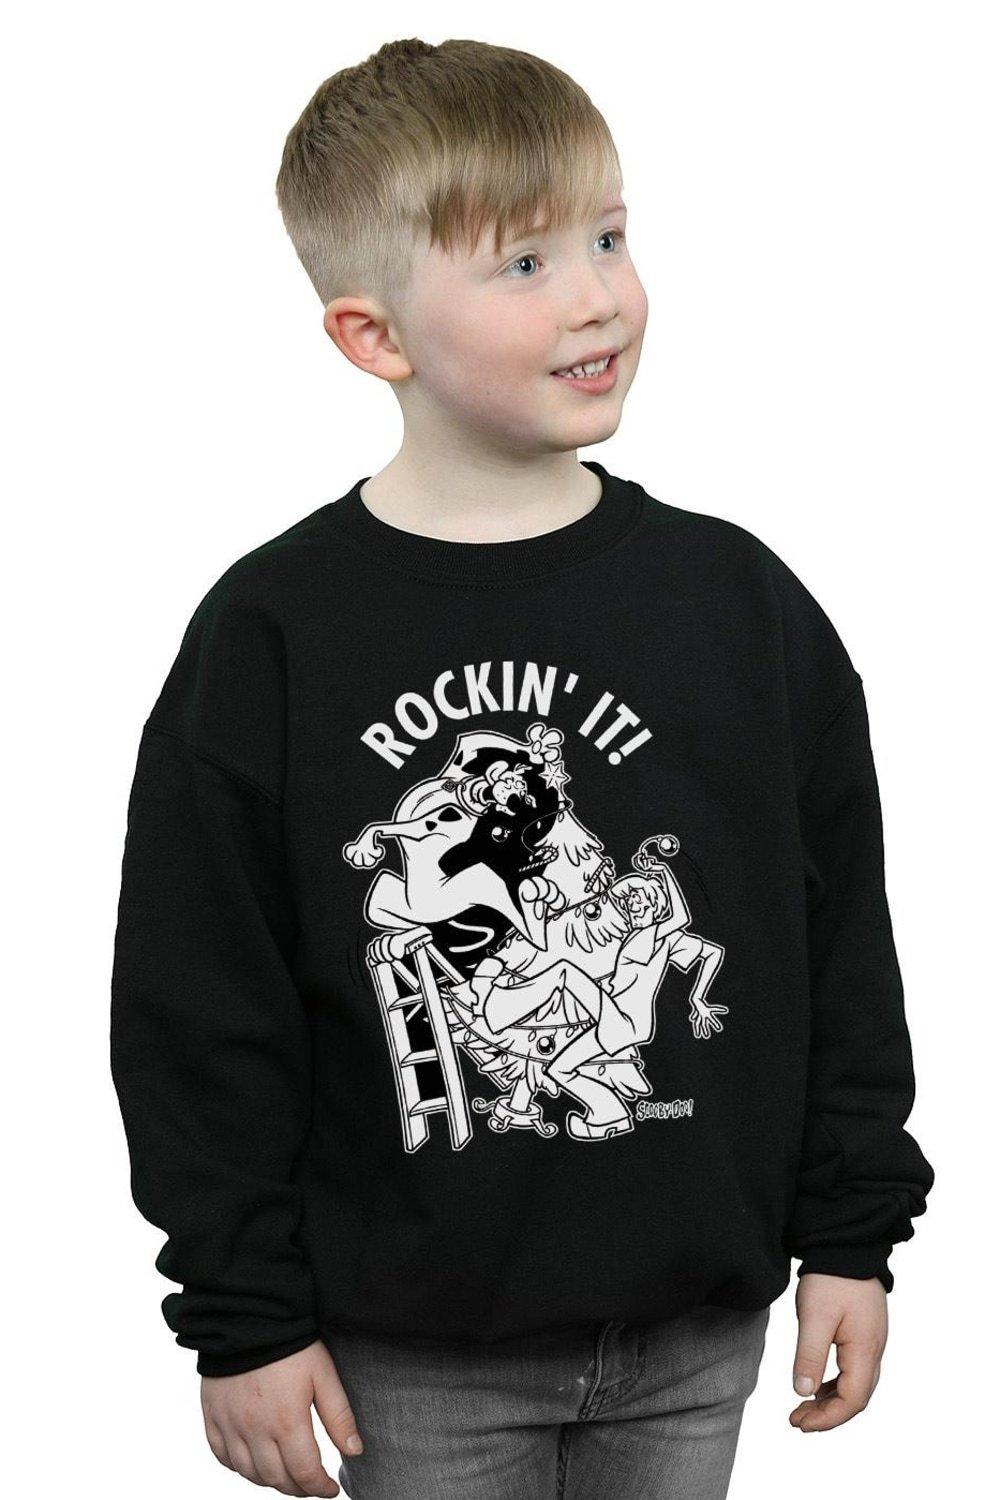 Rockin’ It Christmas Sweatshirt